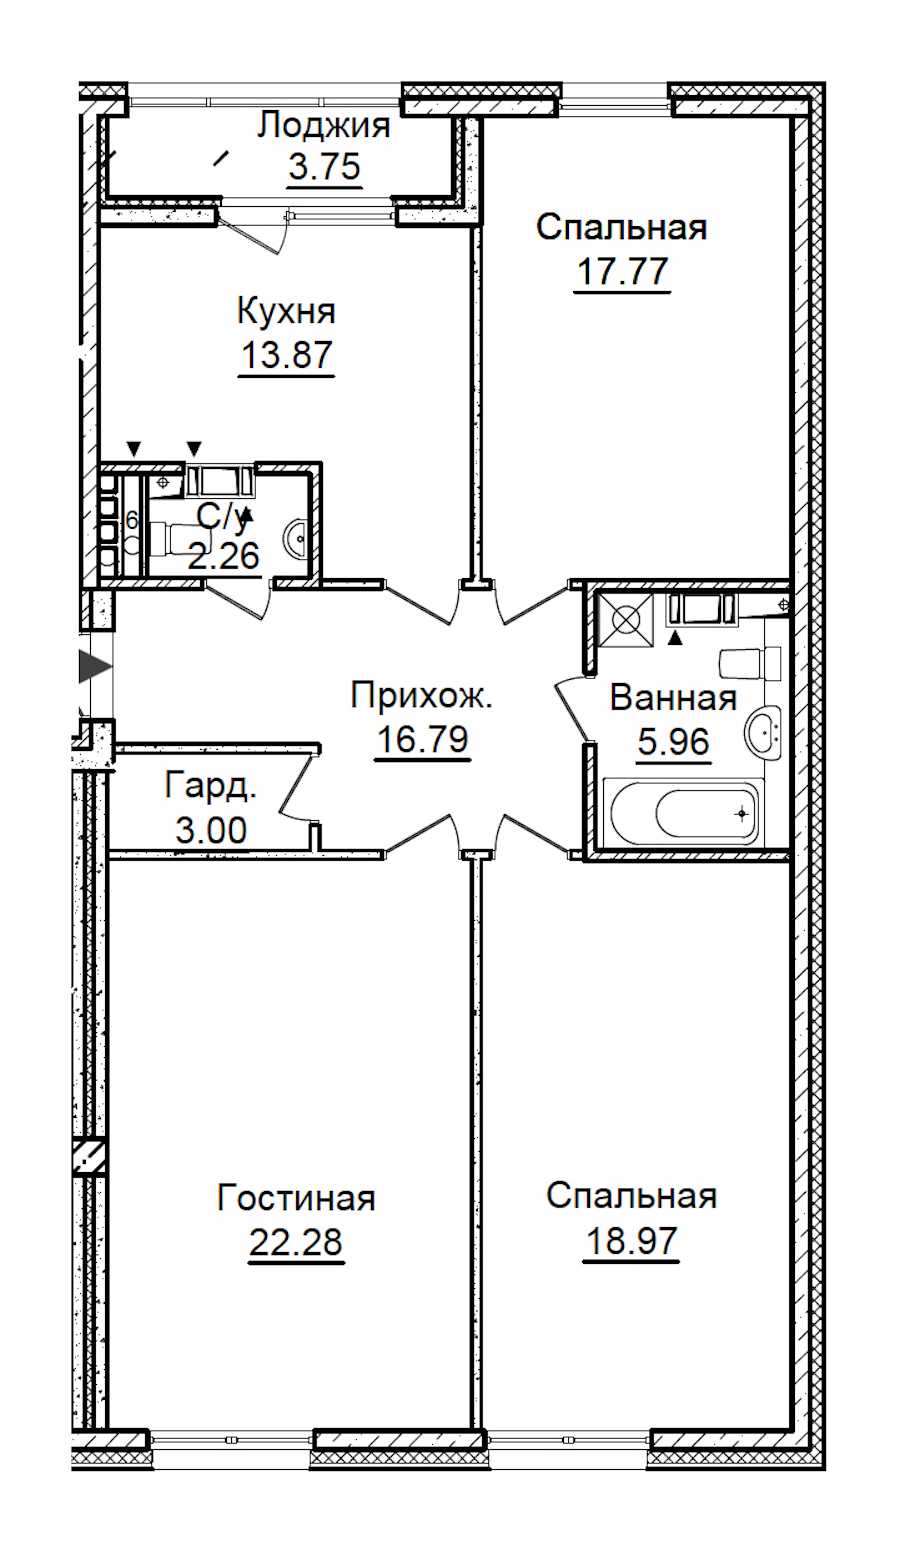 Трехкомнатная квартира в ПСК: площадь 102.78 м2 , этаж: 6 – купить в Санкт-Петербурге